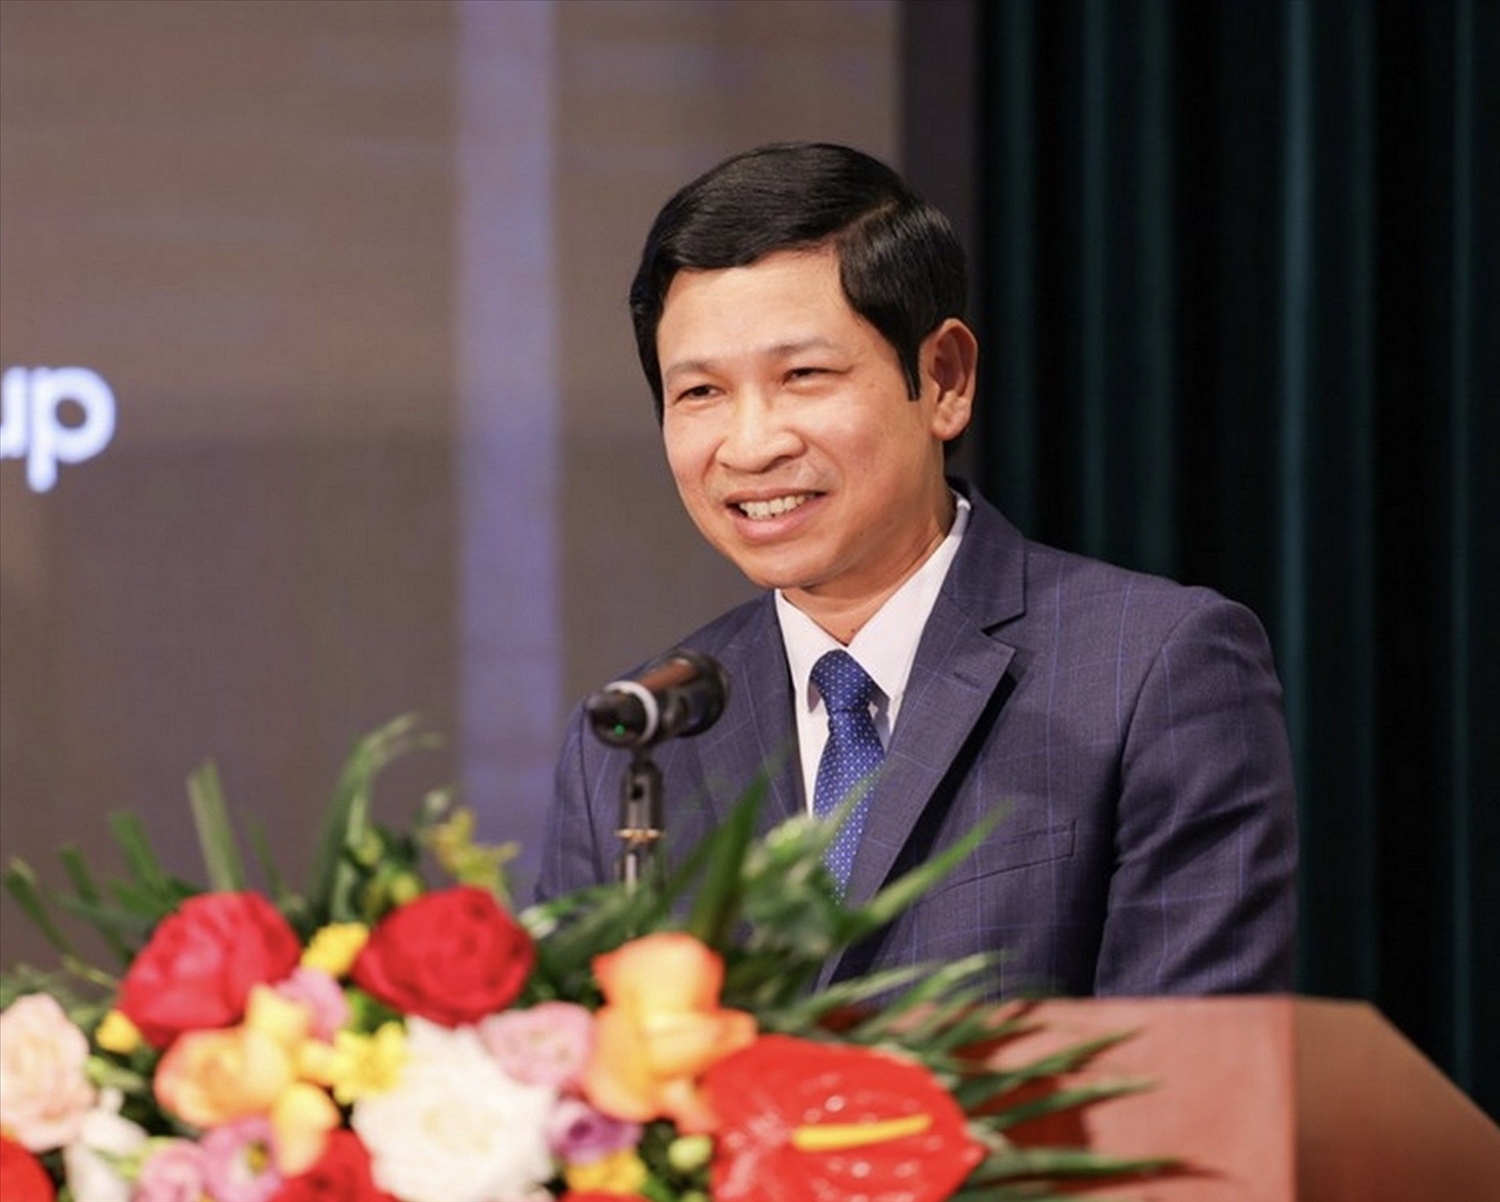 Đồng chí Hồ An Phong, Thứ trưởng Bộ Văn hóa, Thể thao và Du lịch phát biểu tại buổi lễ.